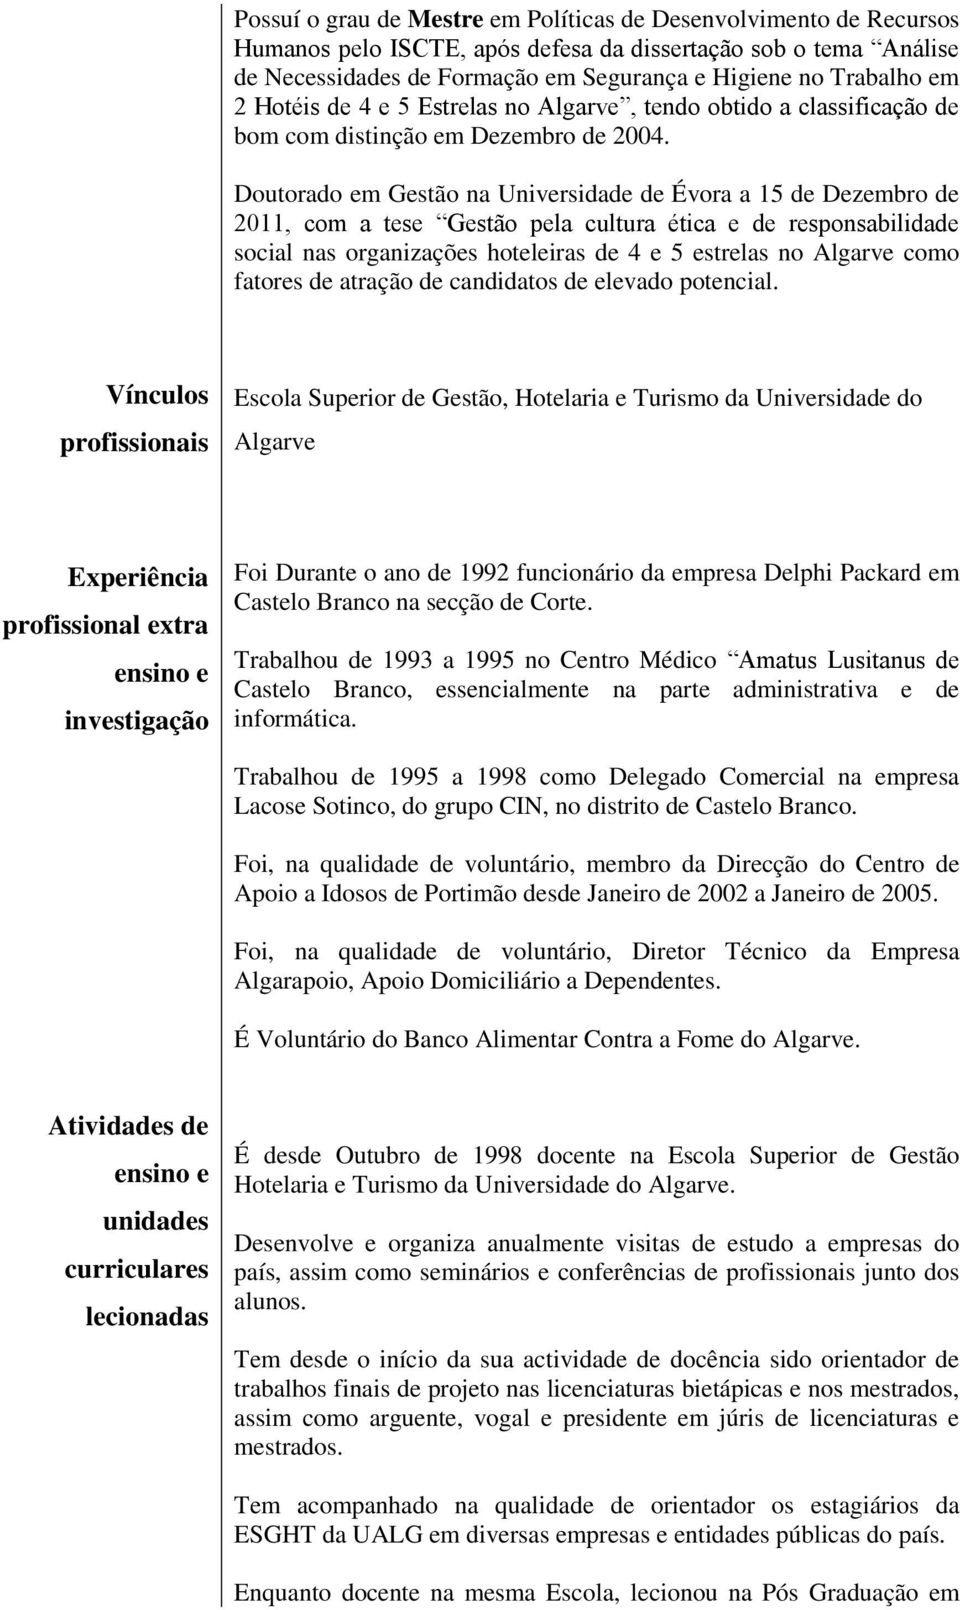 Doutorado em Gestão na Universidade de Évora a 15 de Dezembro de 2011, com a tese Gestão pela cultura ética e de responsabilidade social nas organizações hoteleiras de 4 e 5 estrelas no Algarve como